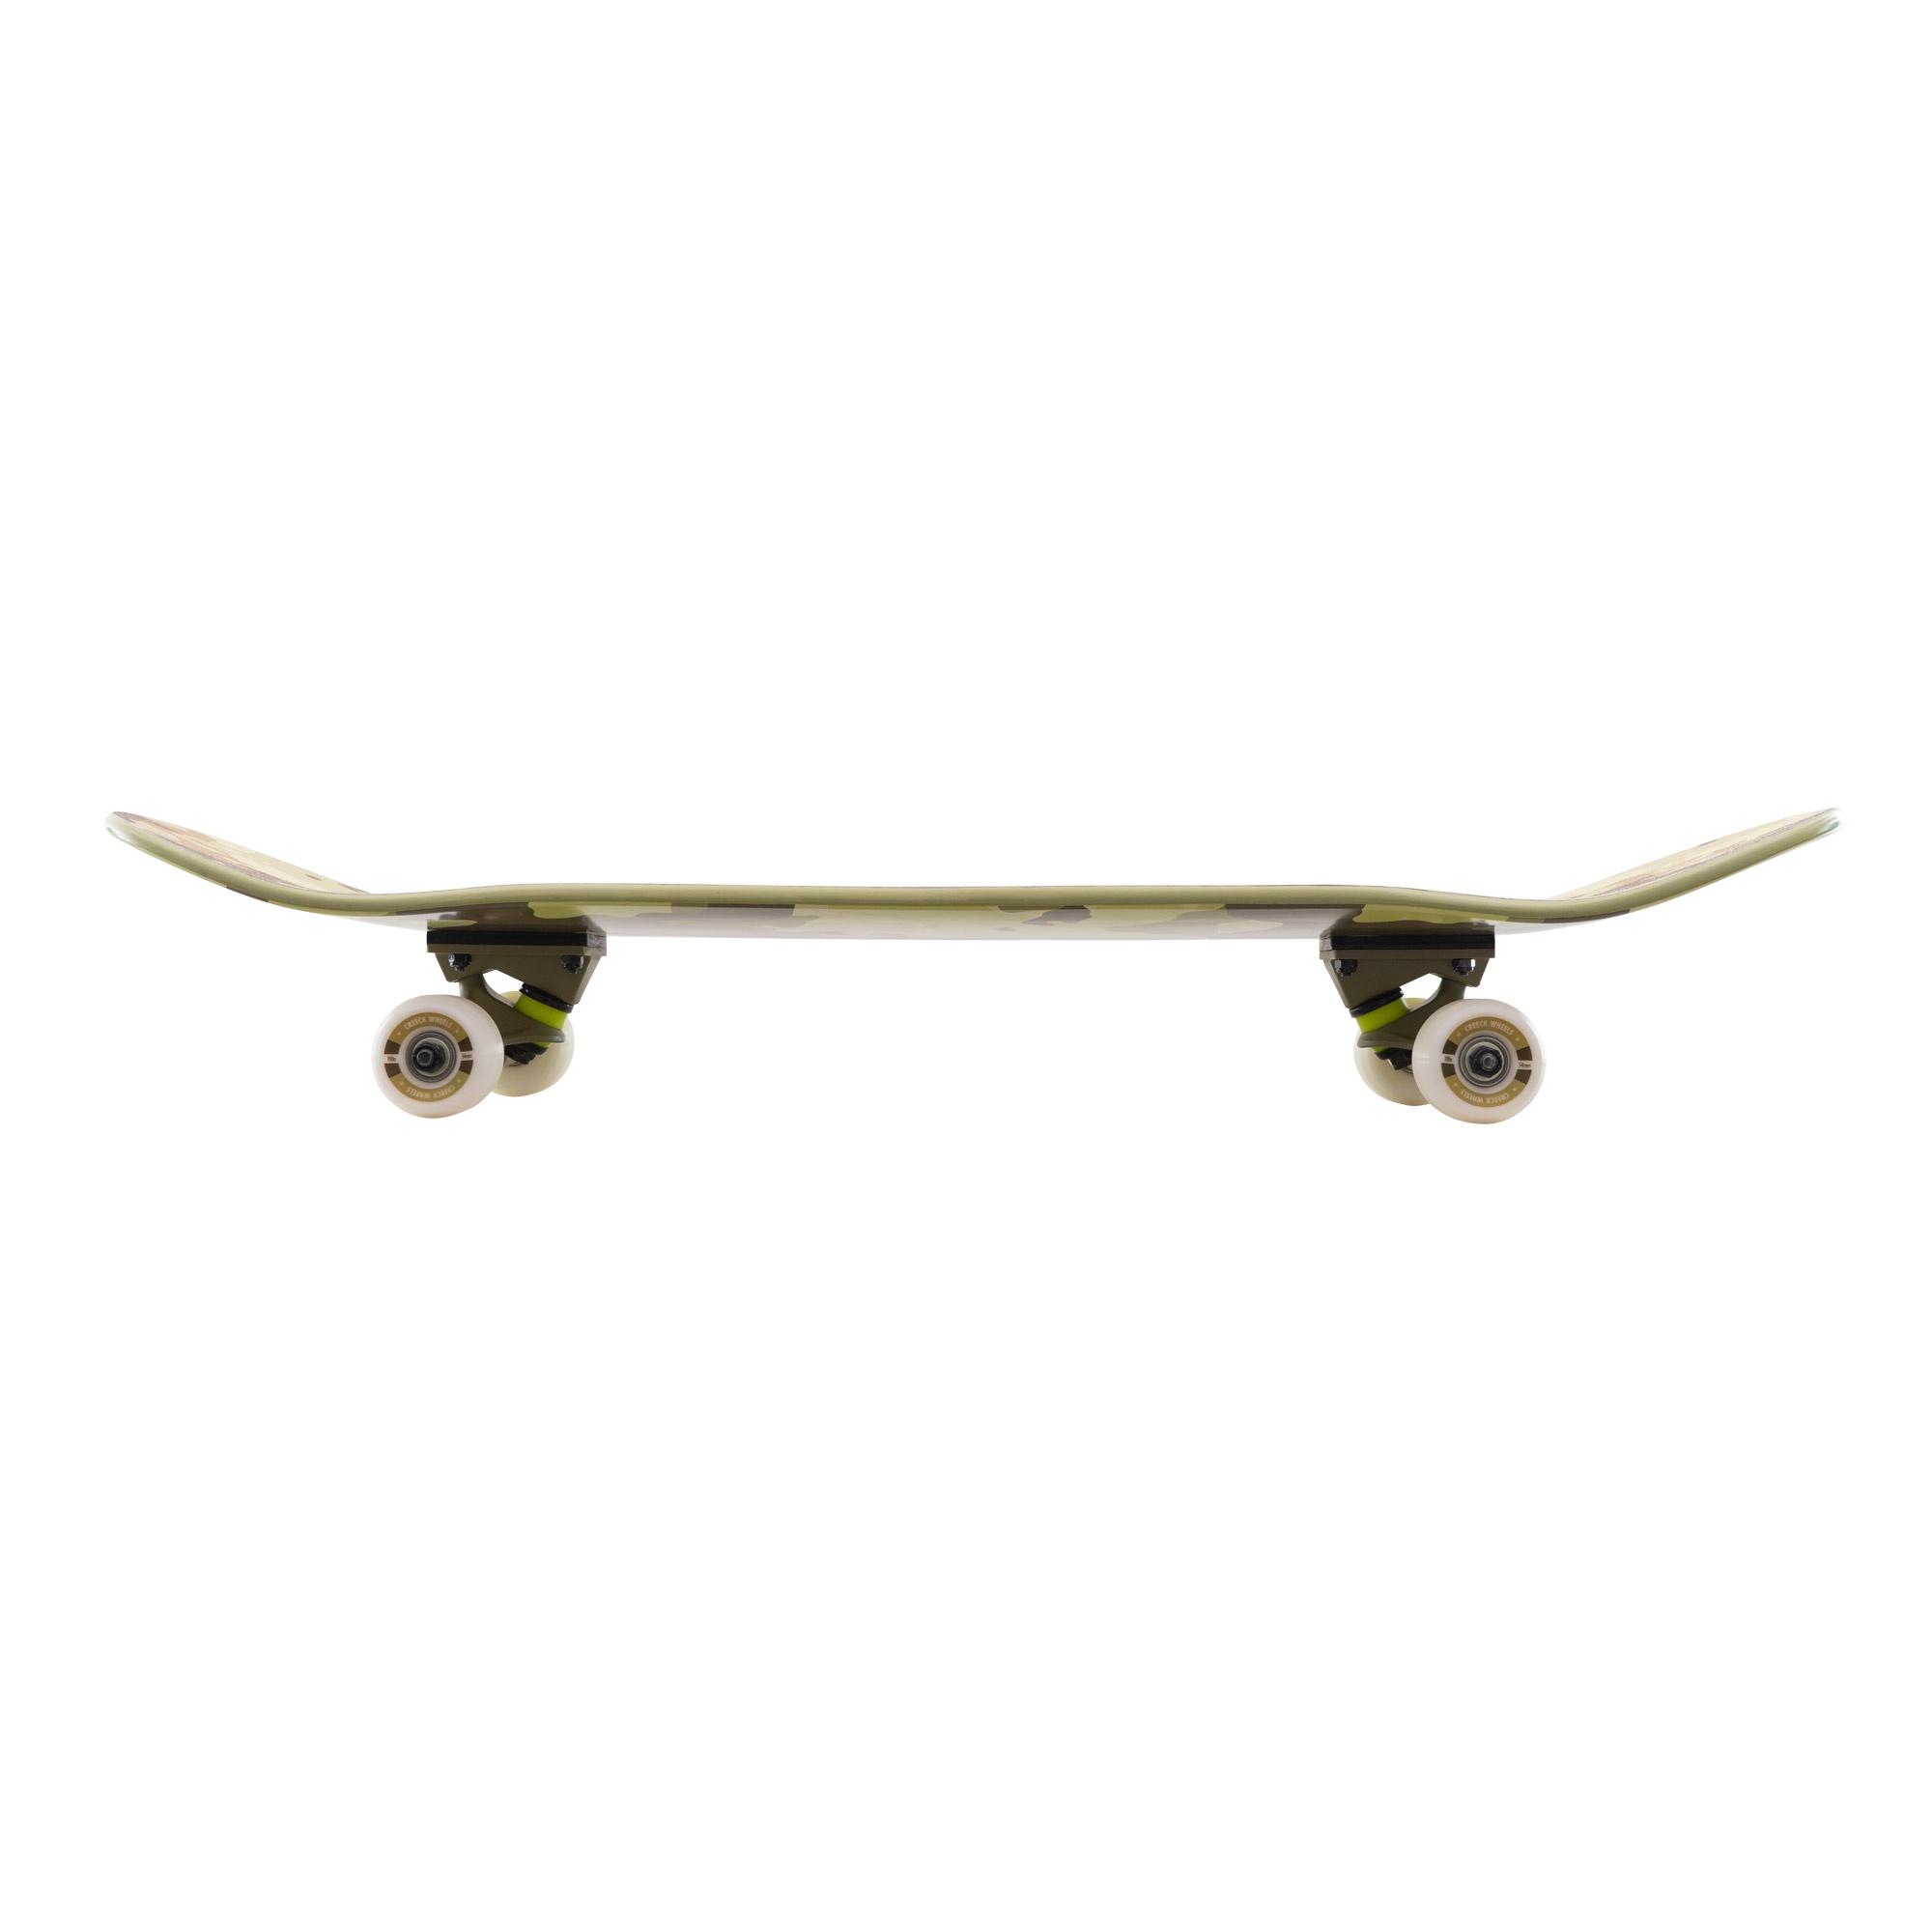 Skateboard Completo Miller Desert Arce 32"x8,25" Abec7 Ruedas Creek Shr 53mm  MKP